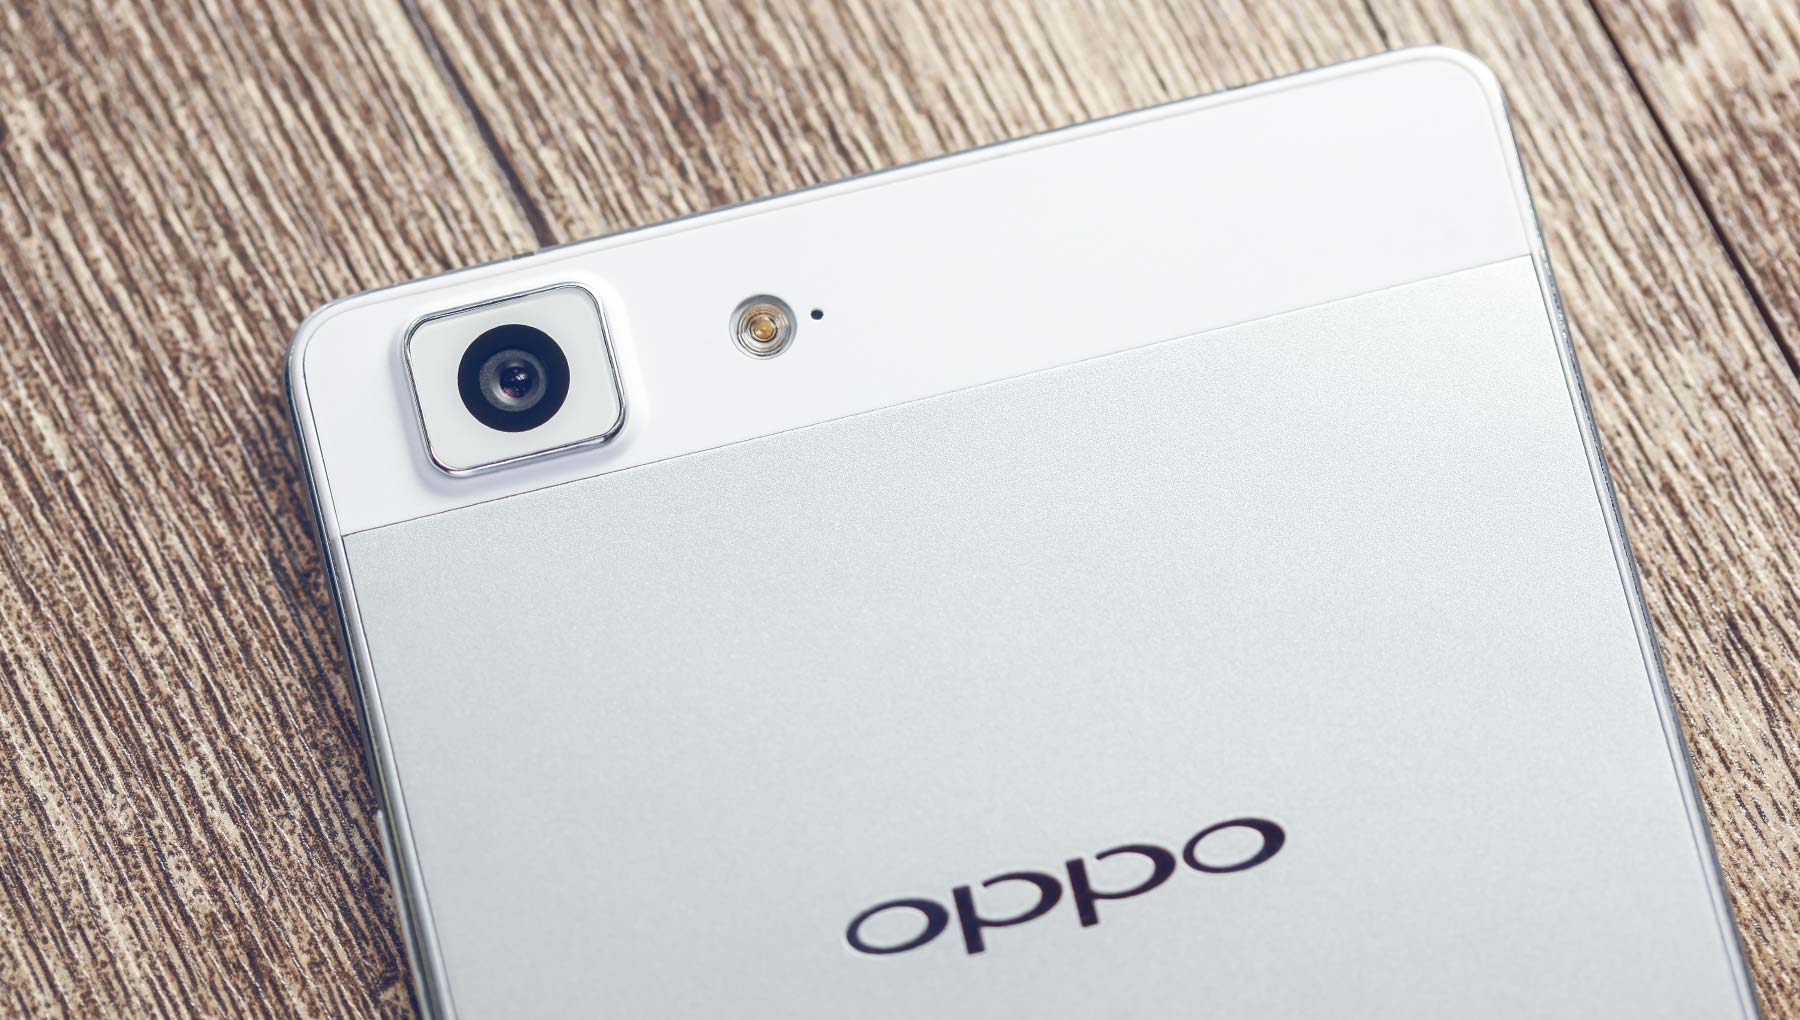 OPPO มียอดขายสมาร์ทโฟน 50 ล้านเครื่องในปี 2015